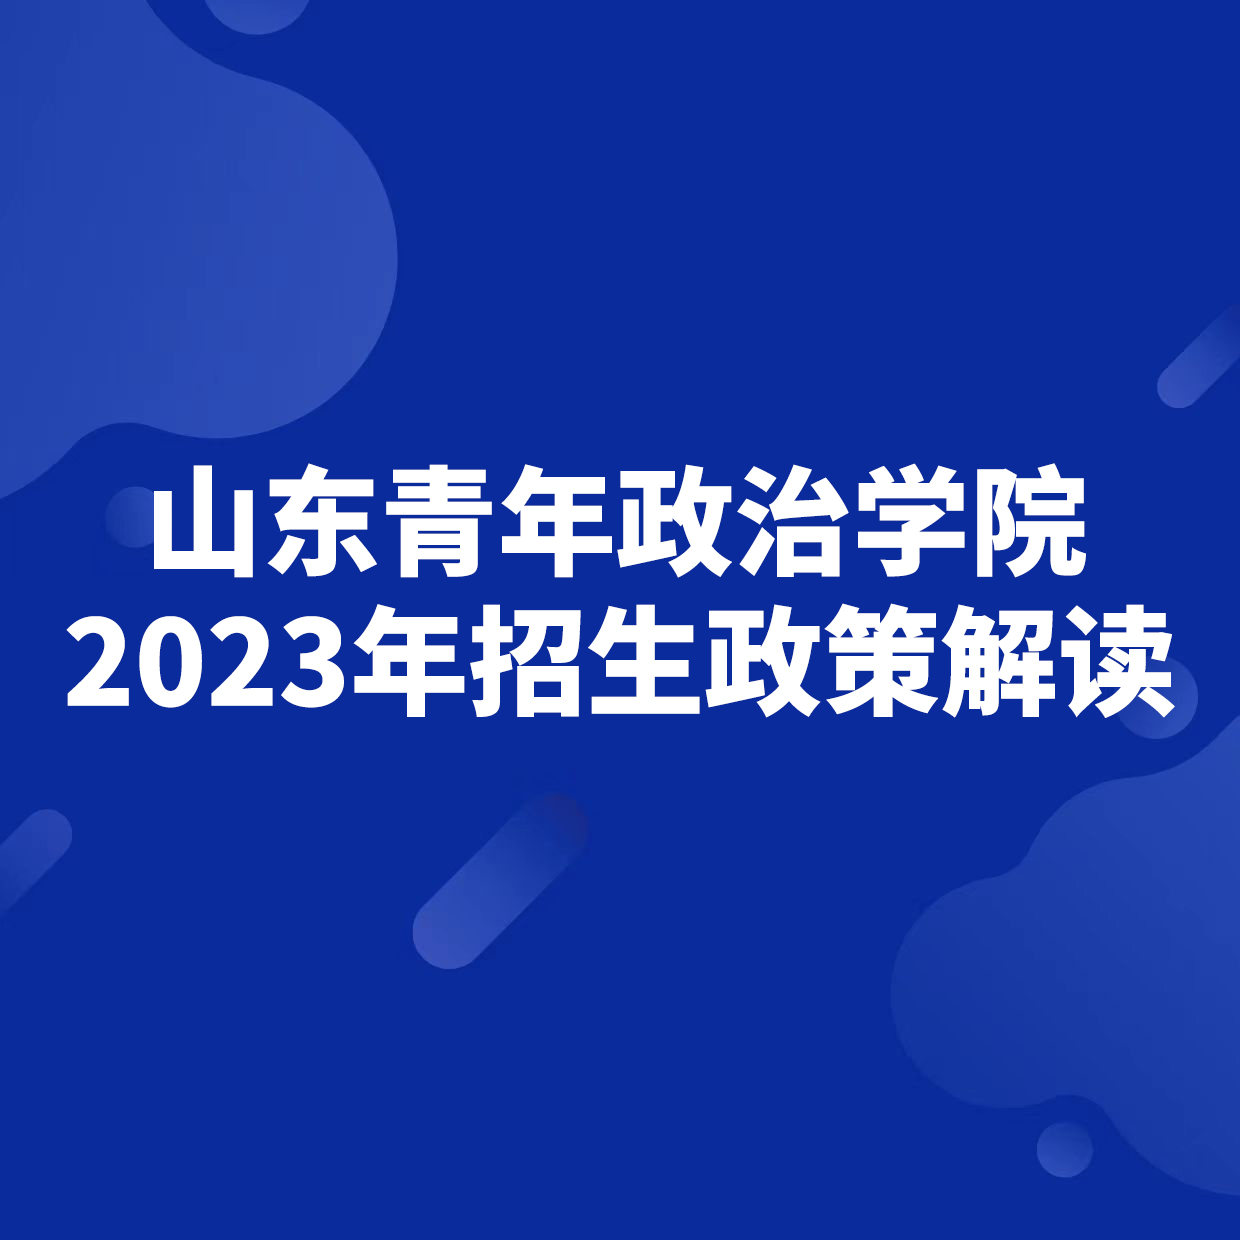 山东青年政治学院2023年招生政策解读